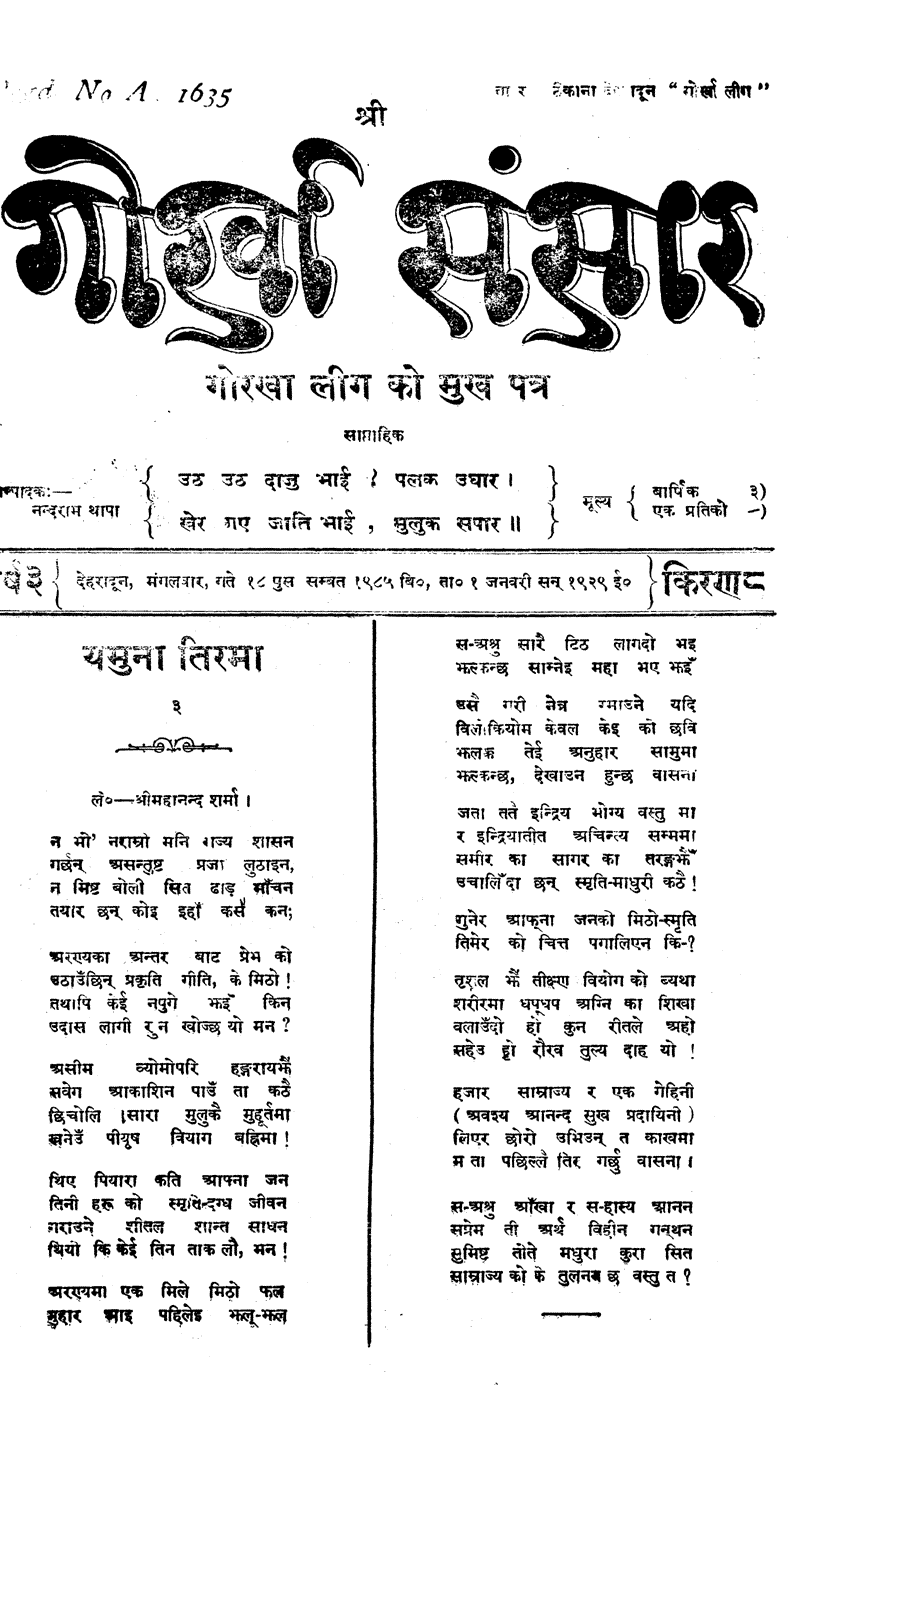 Gorkha Sansar, 1 Jan 1929, page 1